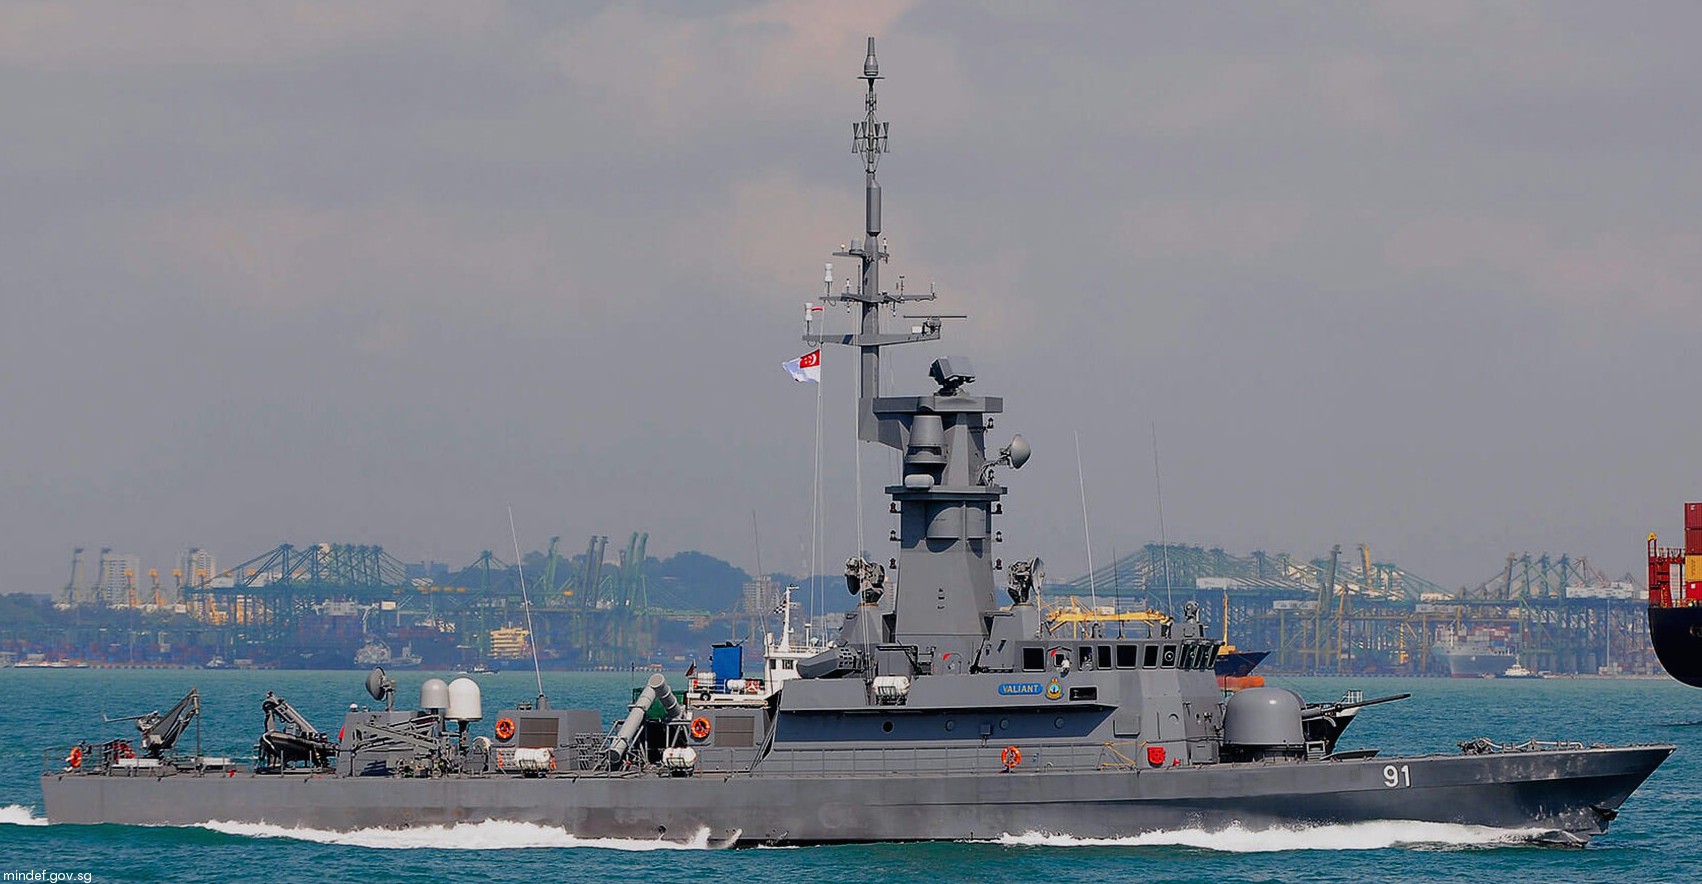 91 rss valiant victory class missile corvette republic singapore navy 12